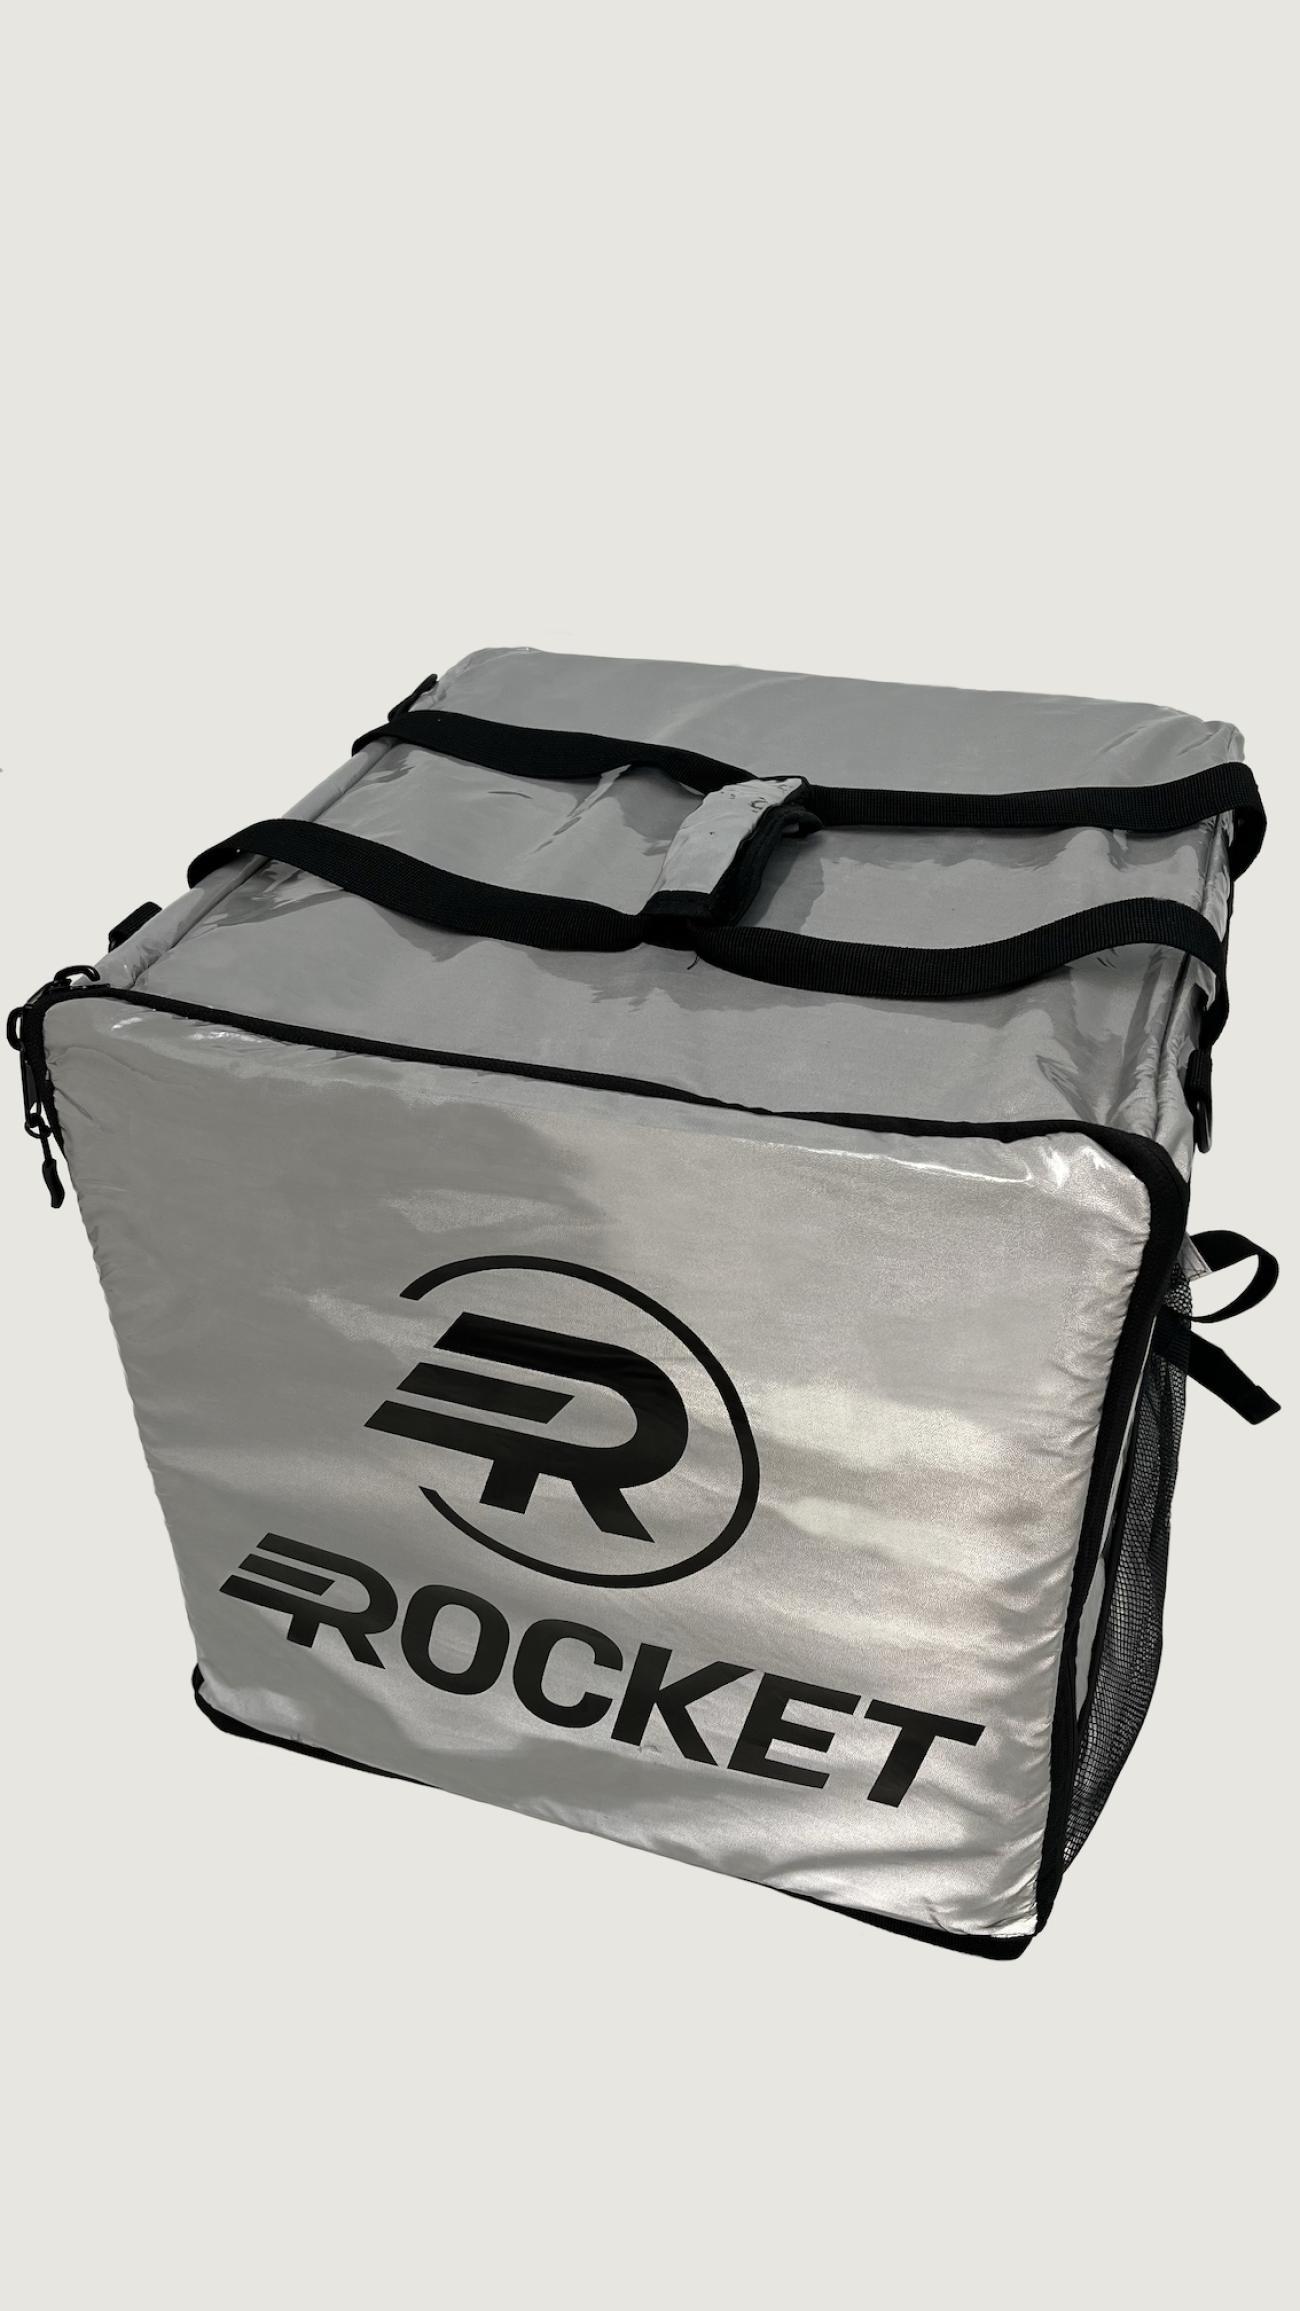 Rocket Cubic Bag